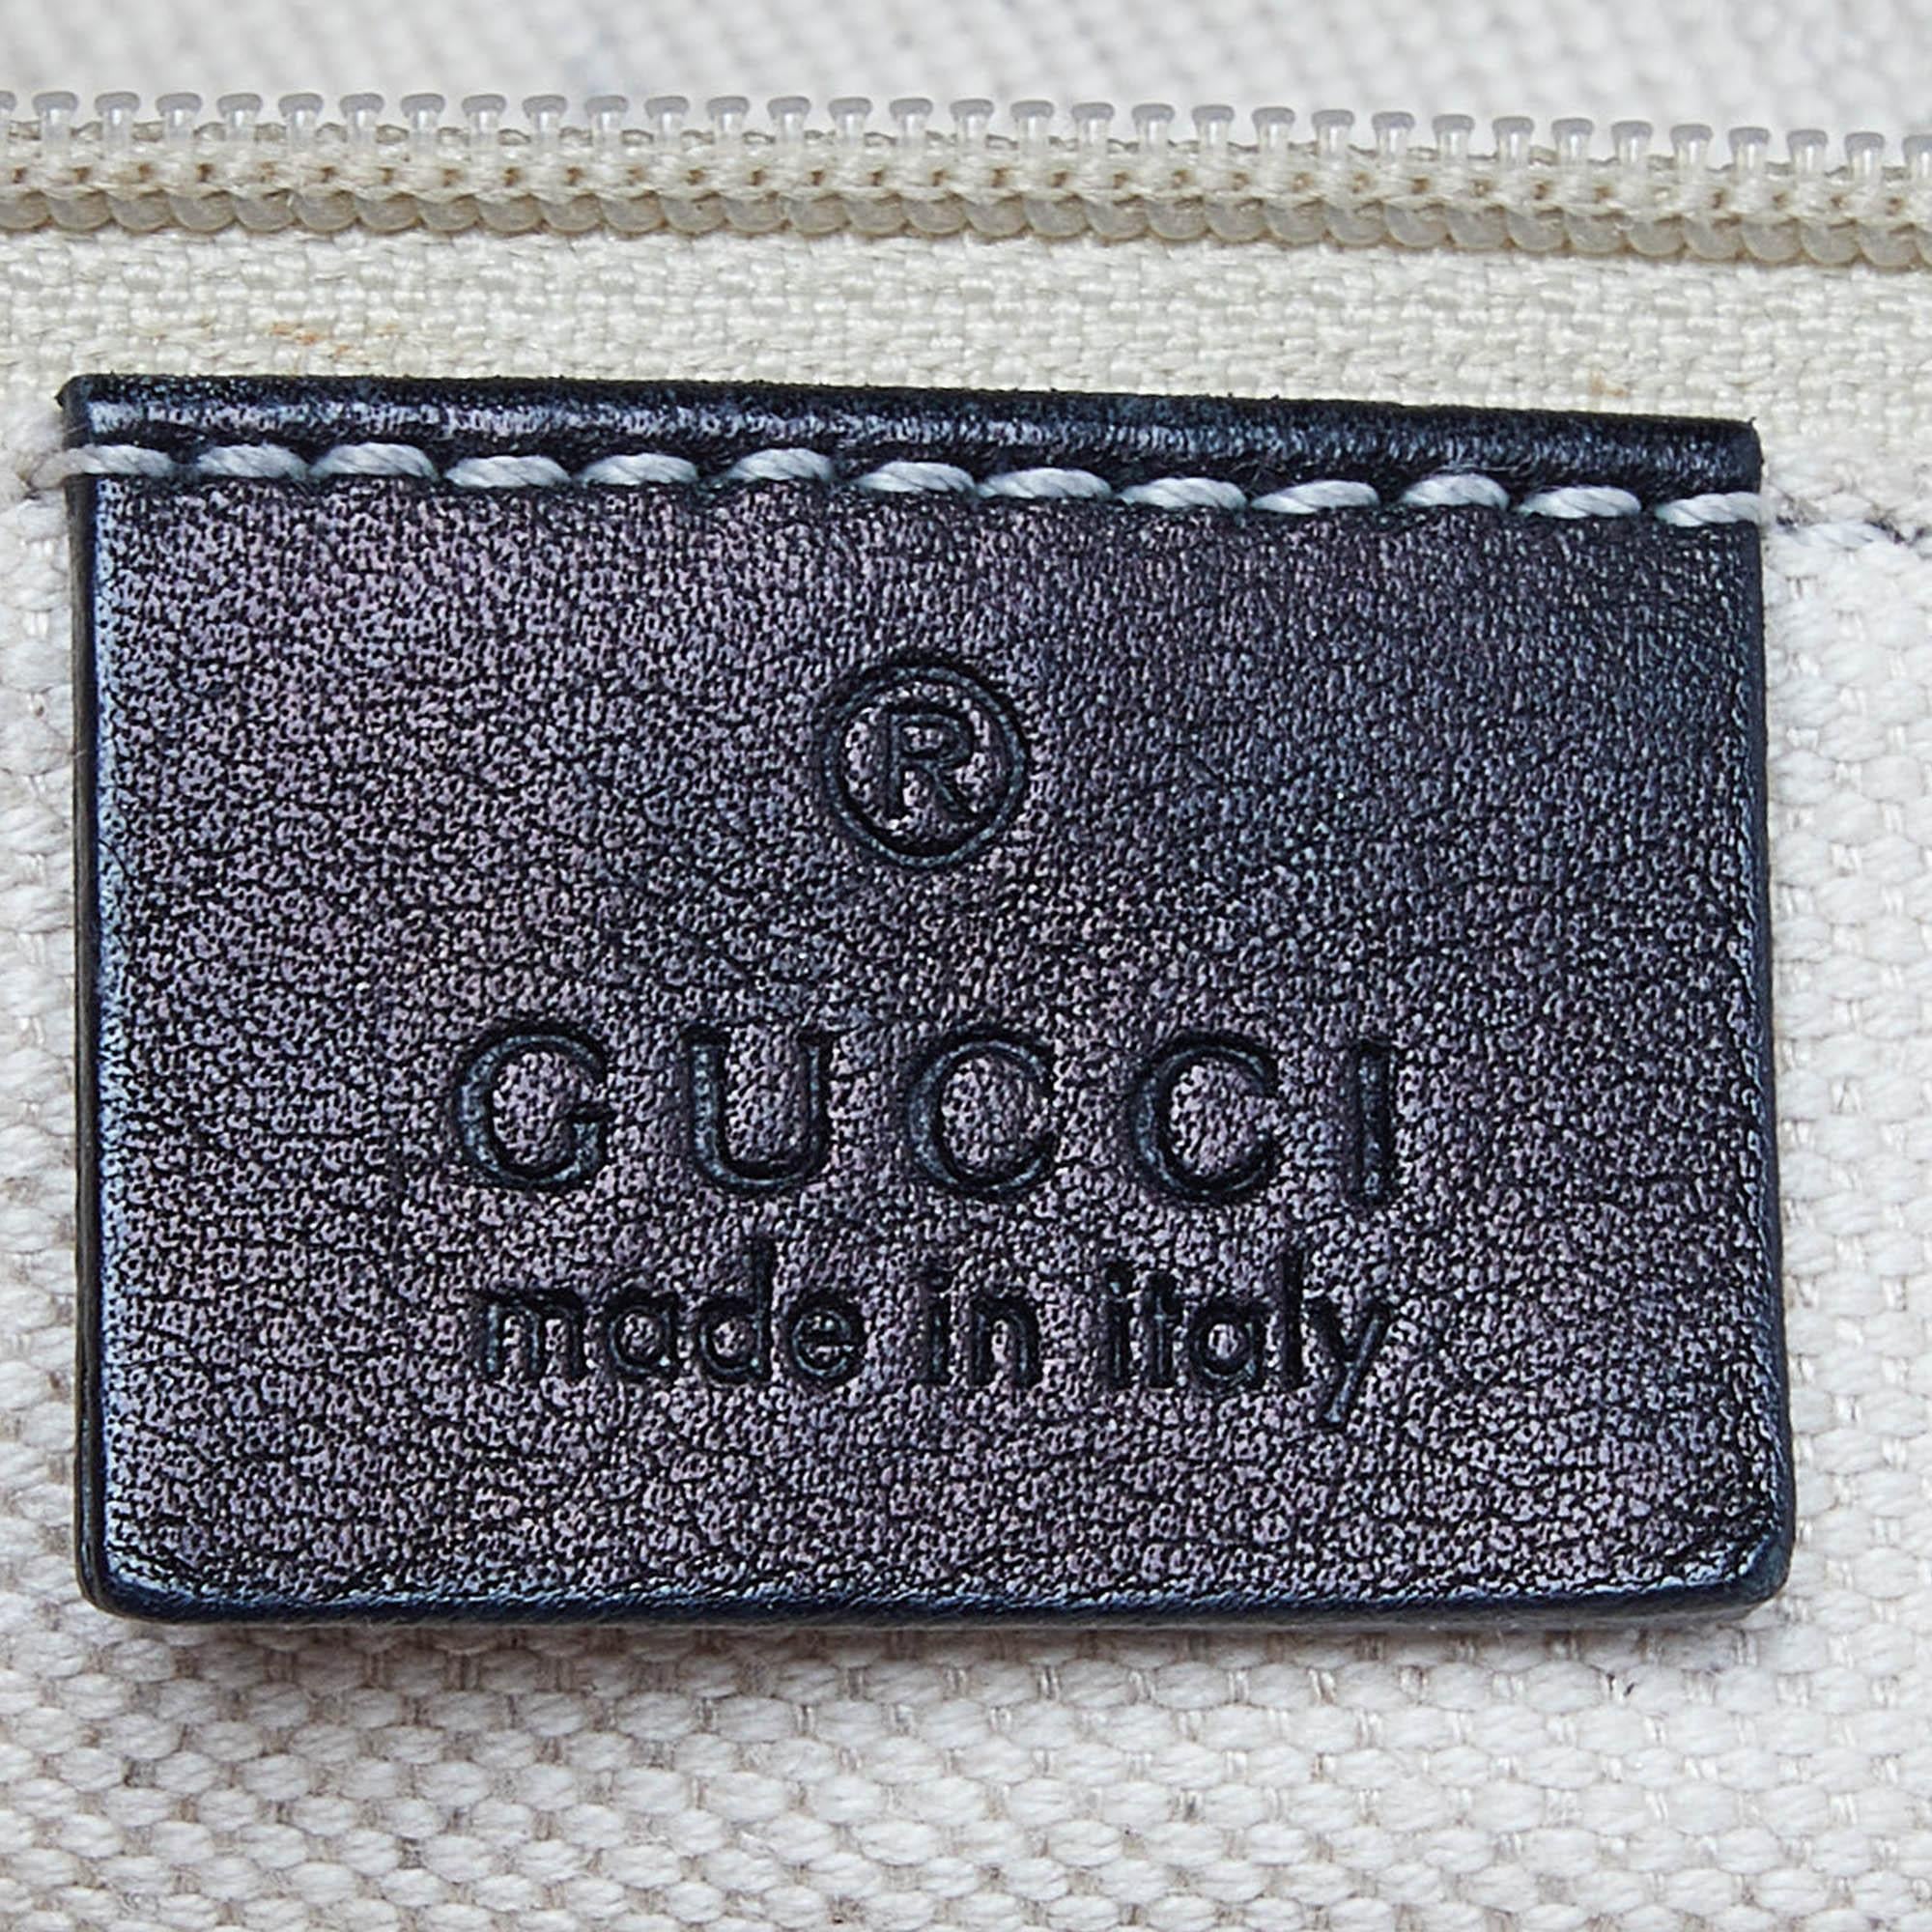 Gucci Black Guccissima Leather Medium Sukey Tote In Fair Condition For Sale In Dubai, Al Qouz 2